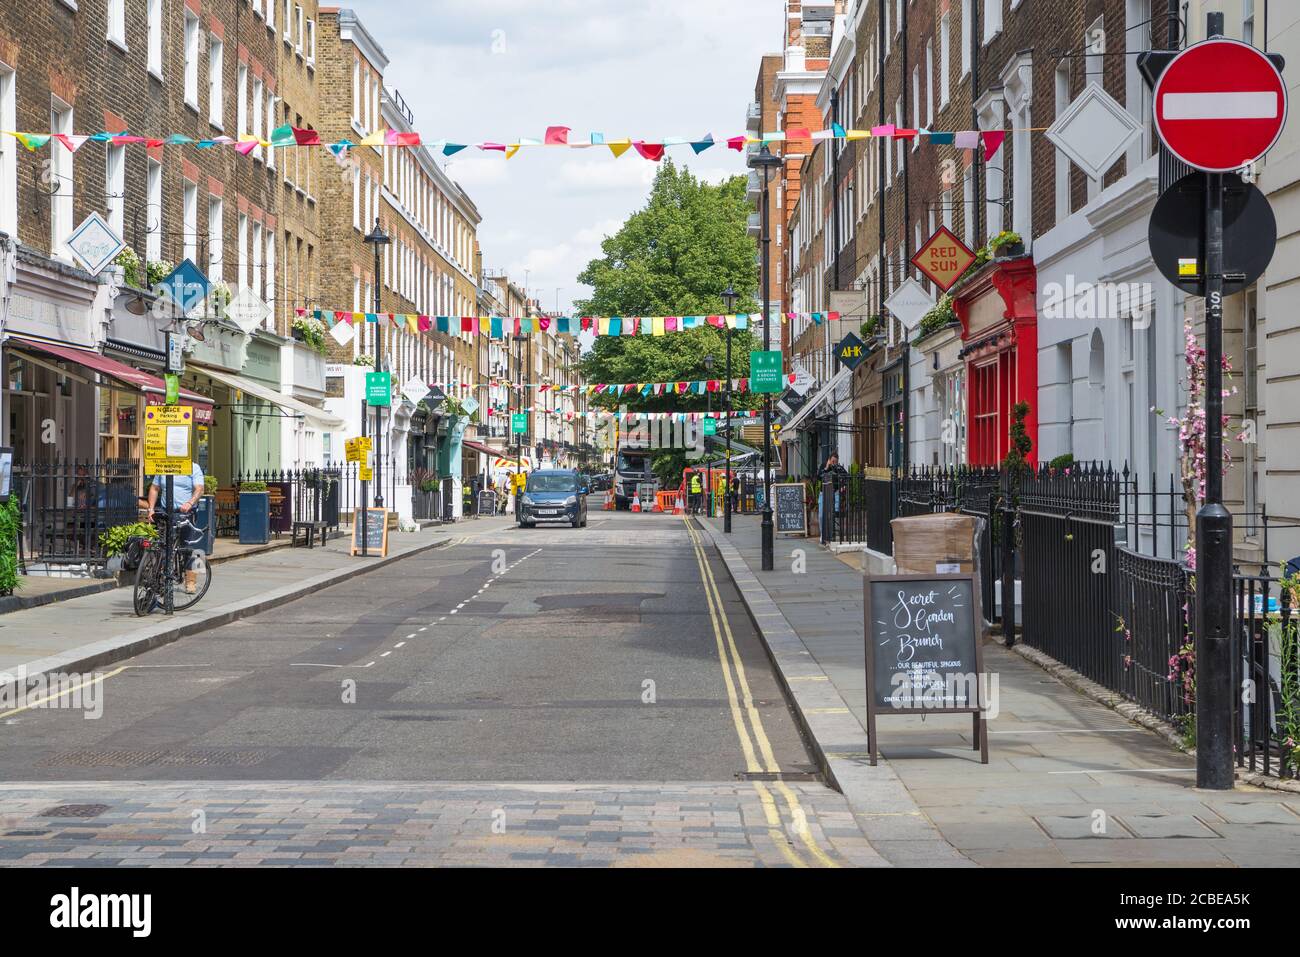 View along New Quebec Street, Marylebone, London, England, UK Stock Photo